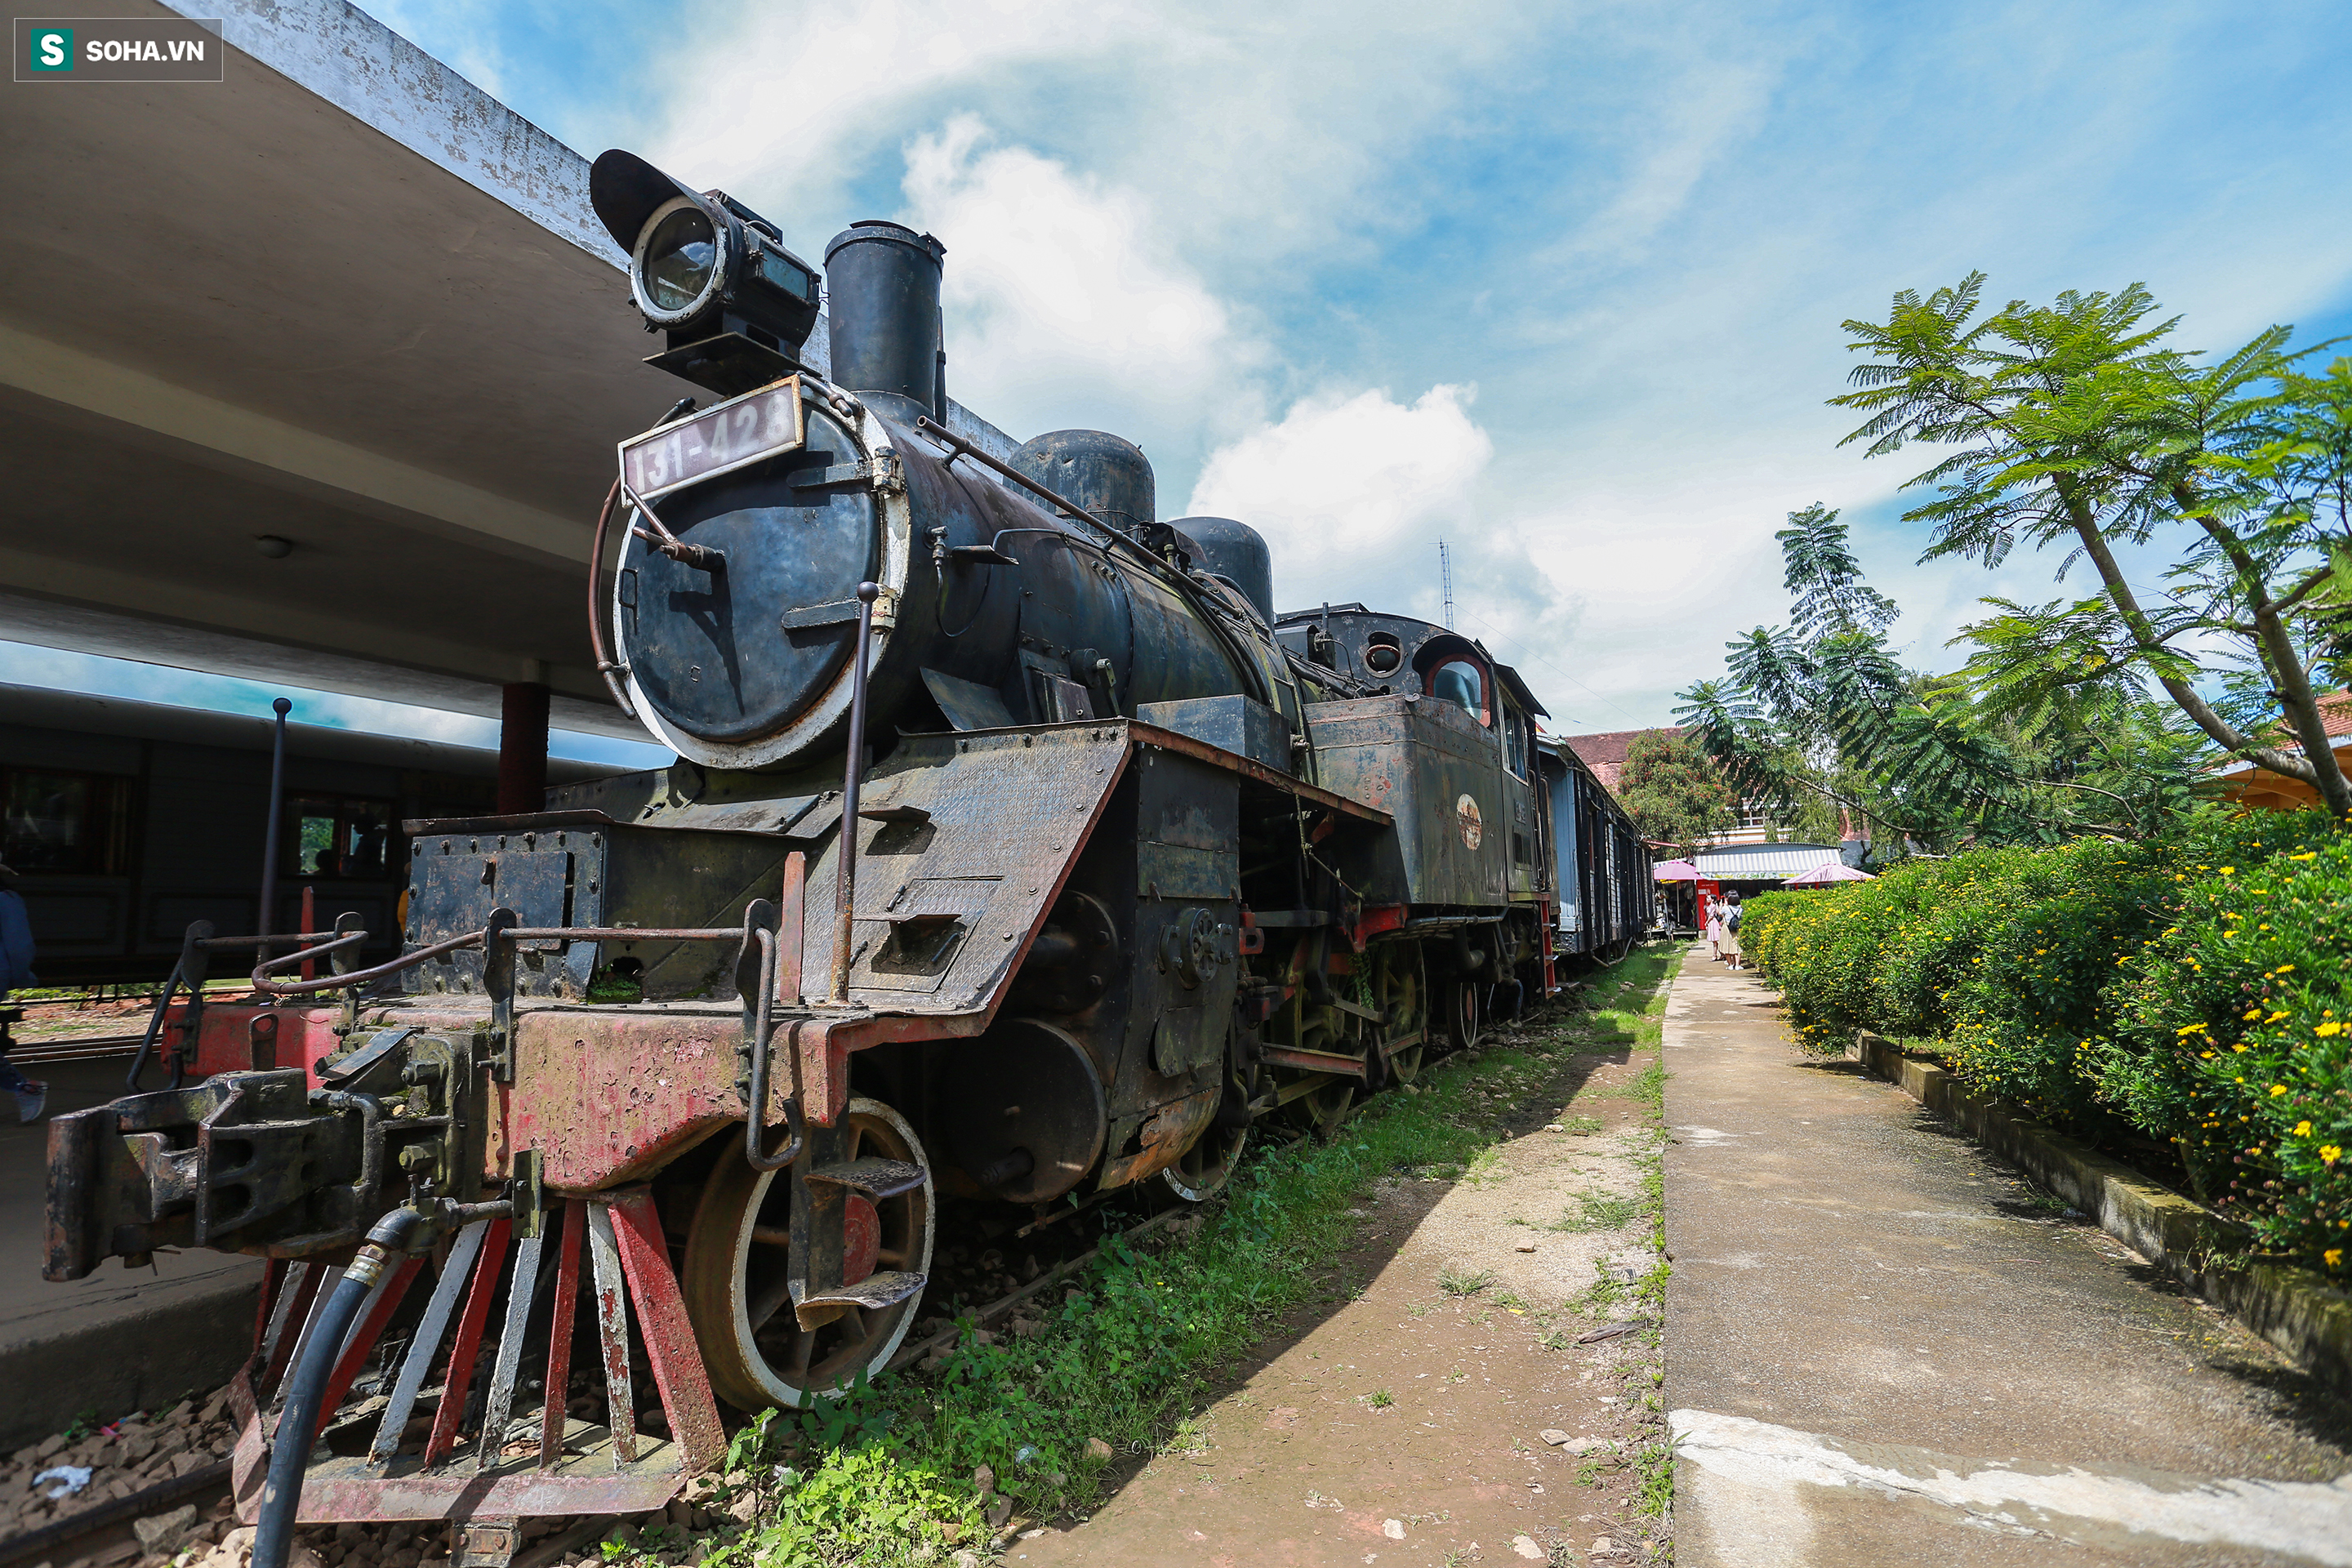 Vẻ đẹp cổ kính của ga tàu hỏa gần 100 tuổi ở Đà Lạt nhìn từ trên cao - Ảnh 8.